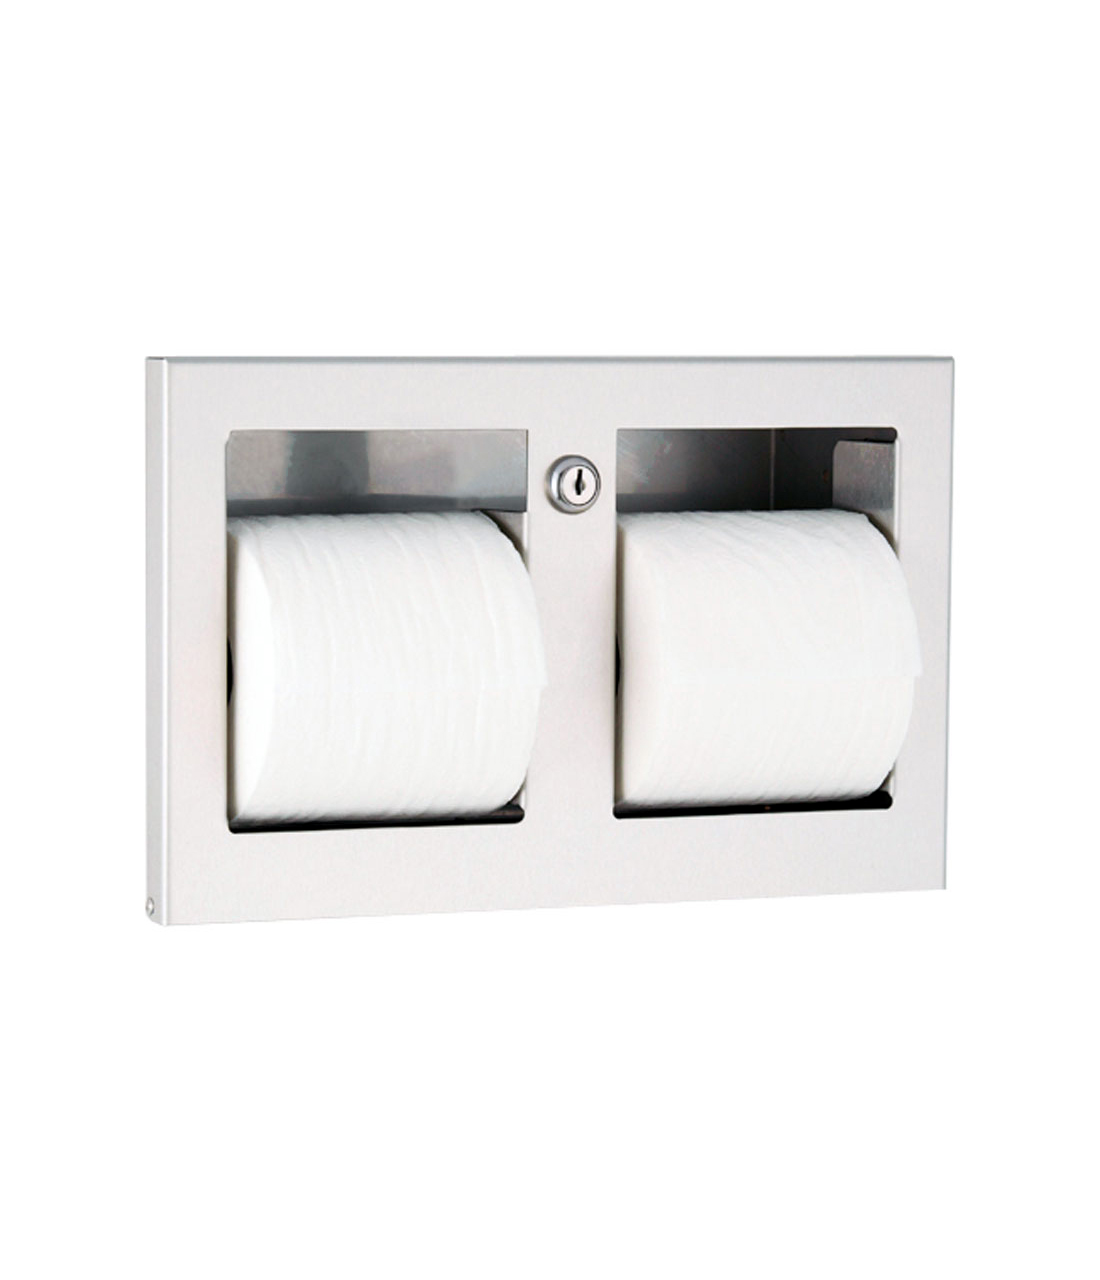 Recessed Multi-Roll Toilet Tissue Dispenser - (Model #: ttd-9)-image